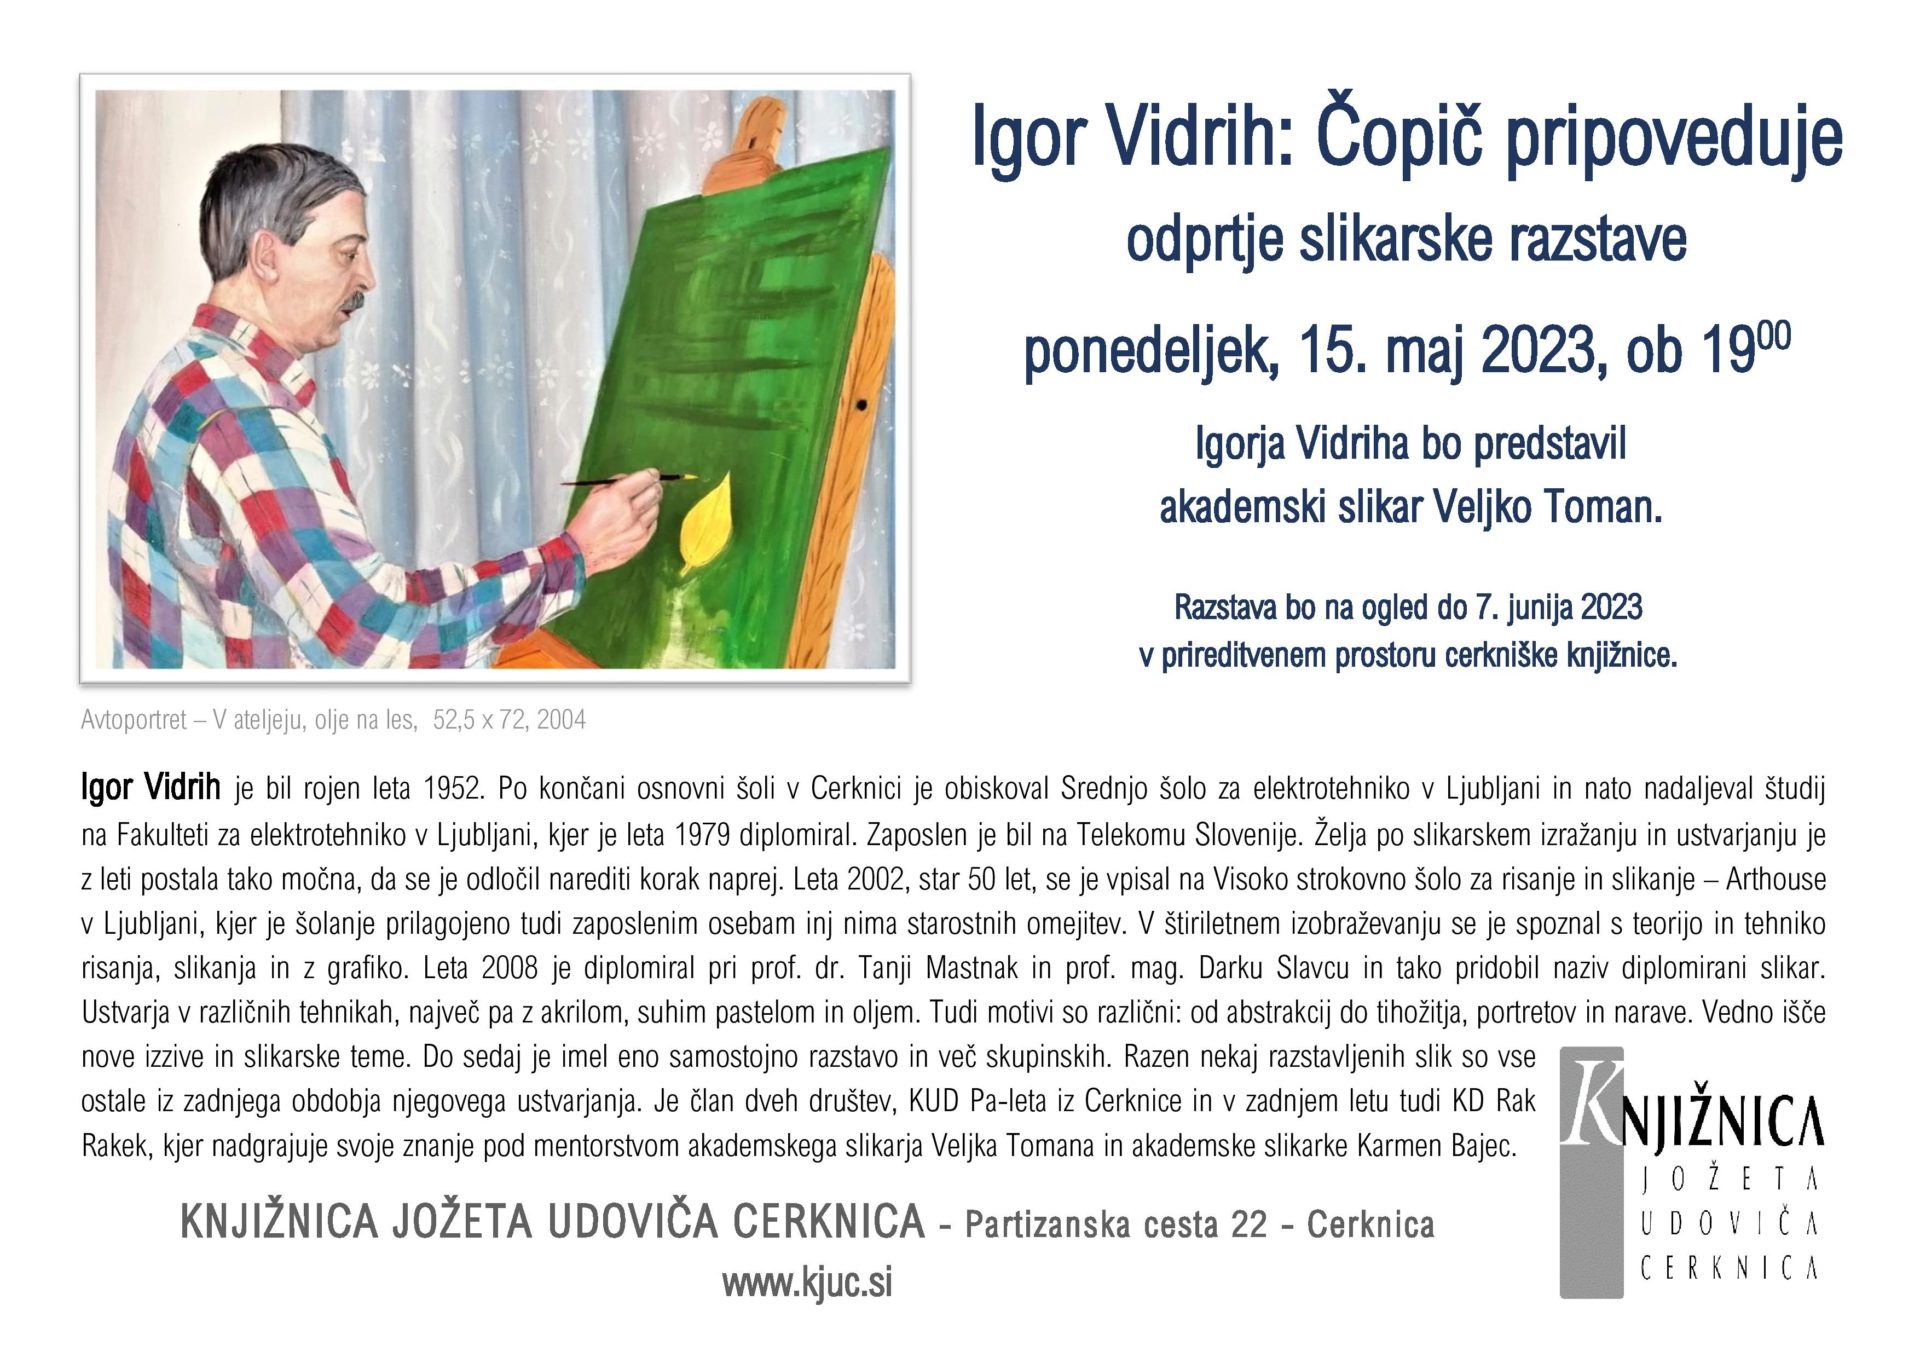 vabilo page 001 1 - Igor Vidrih: Čopič pripoveduje - odprtje slikarske razstave